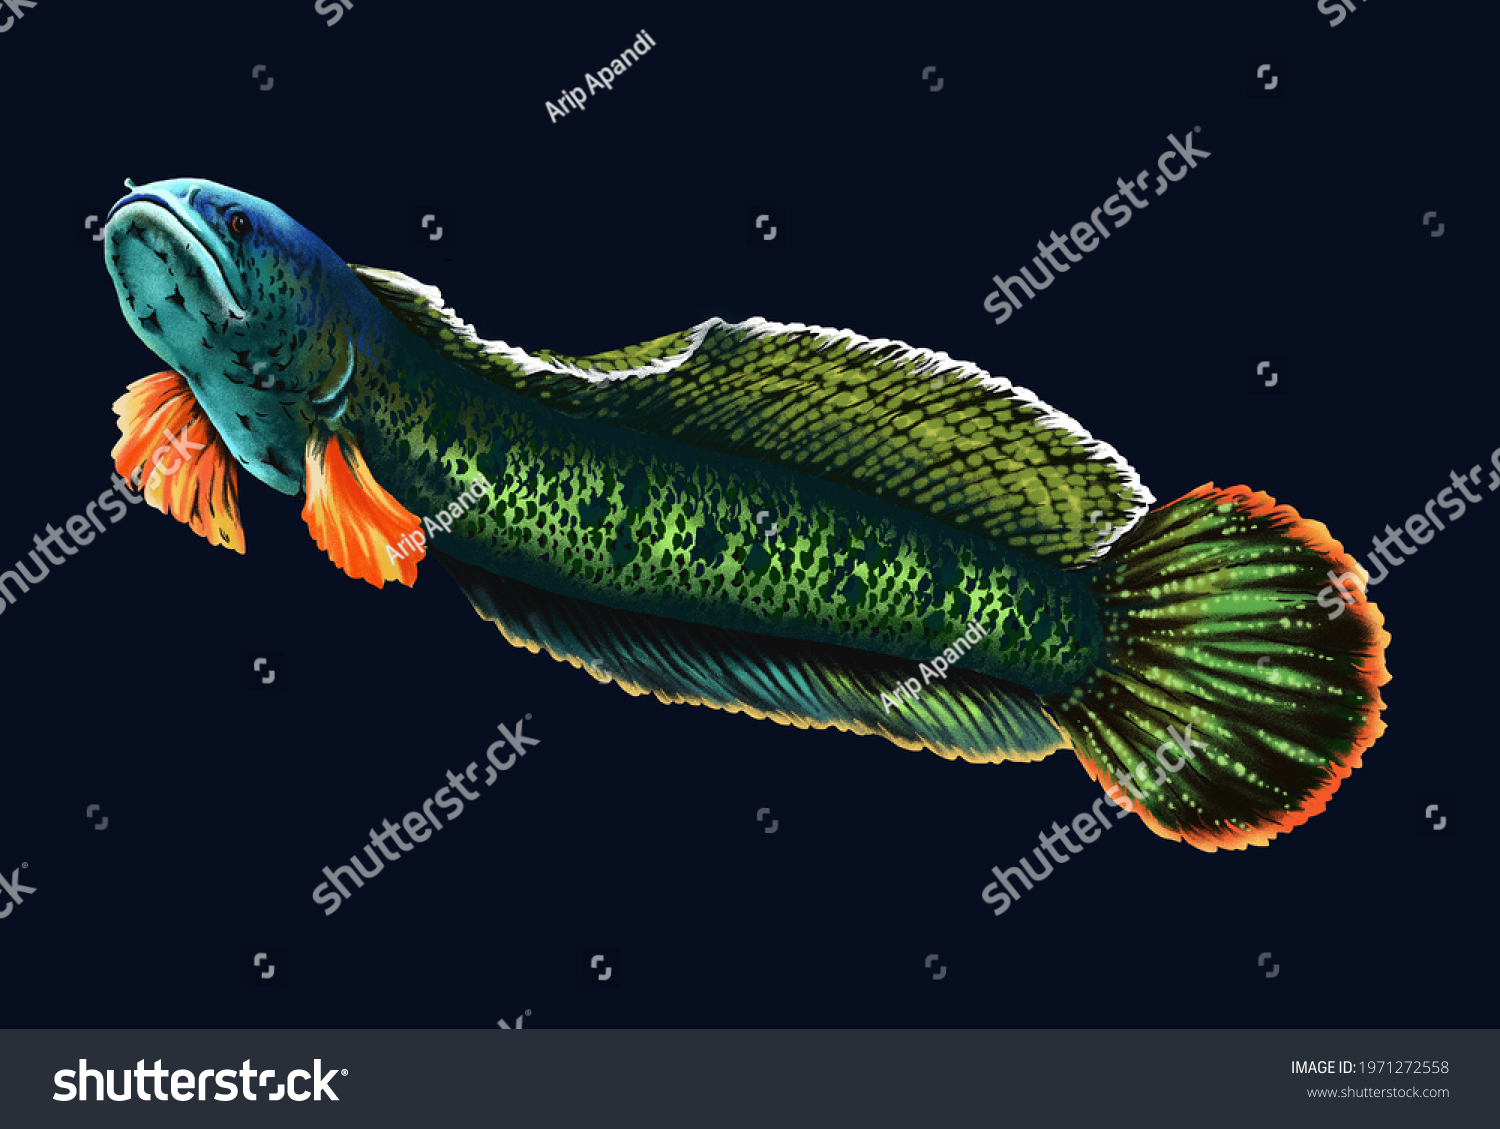 Chana fish